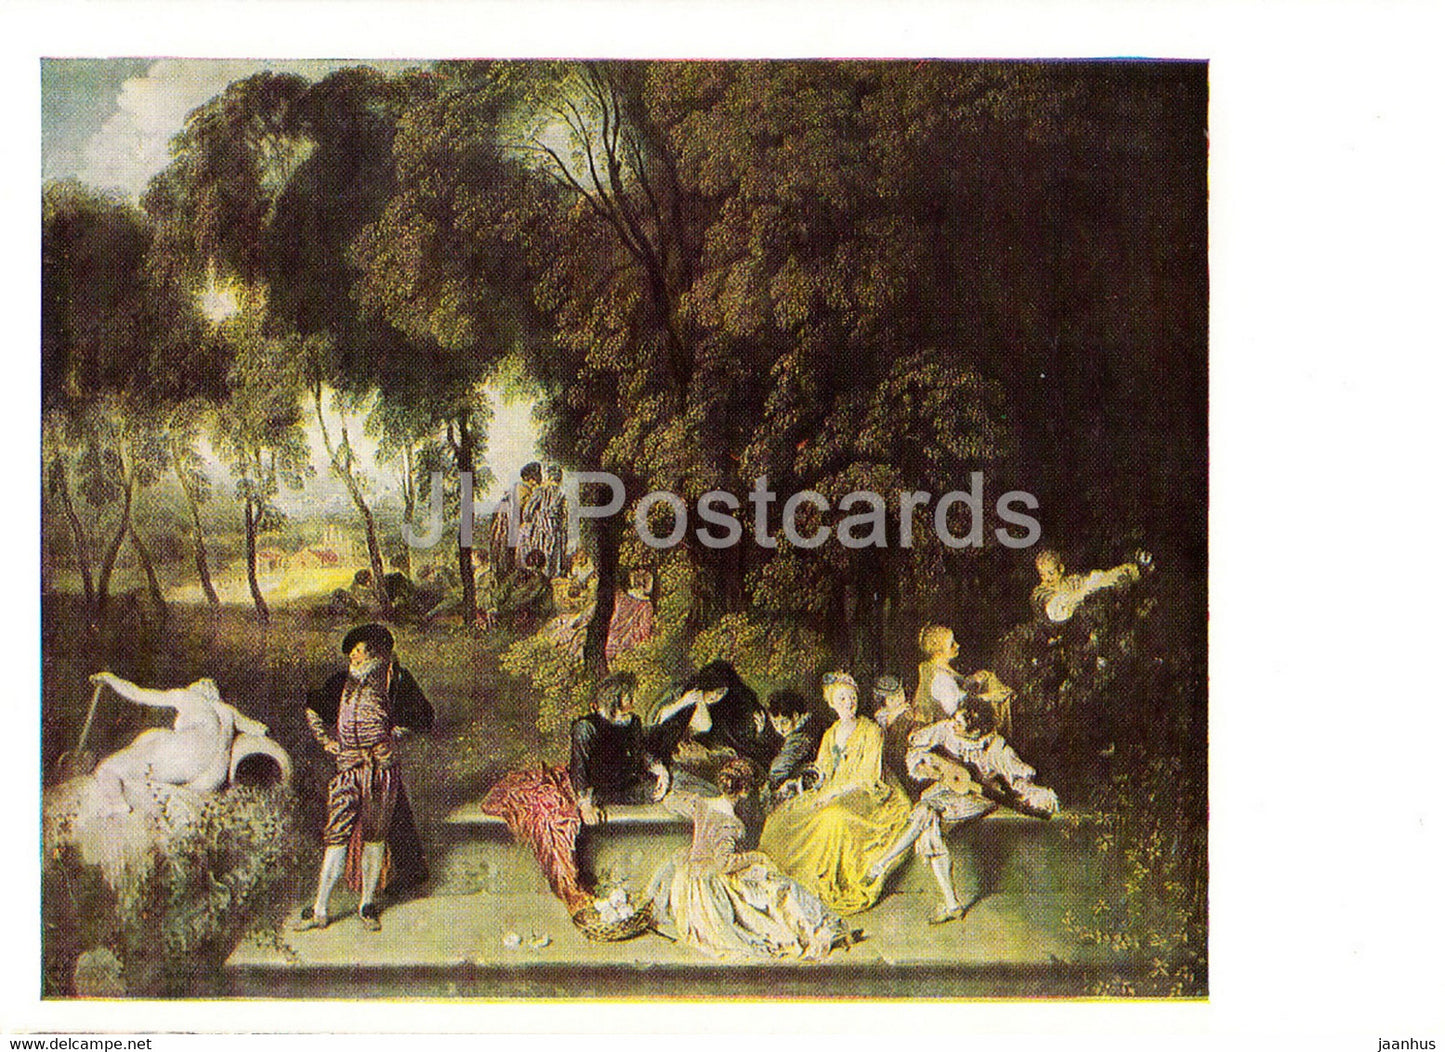 painting by Antoine Watteau - Gesellige Unterhaltung im Freien - 1452 - French art - Germany DDR - unused - JH Postcards